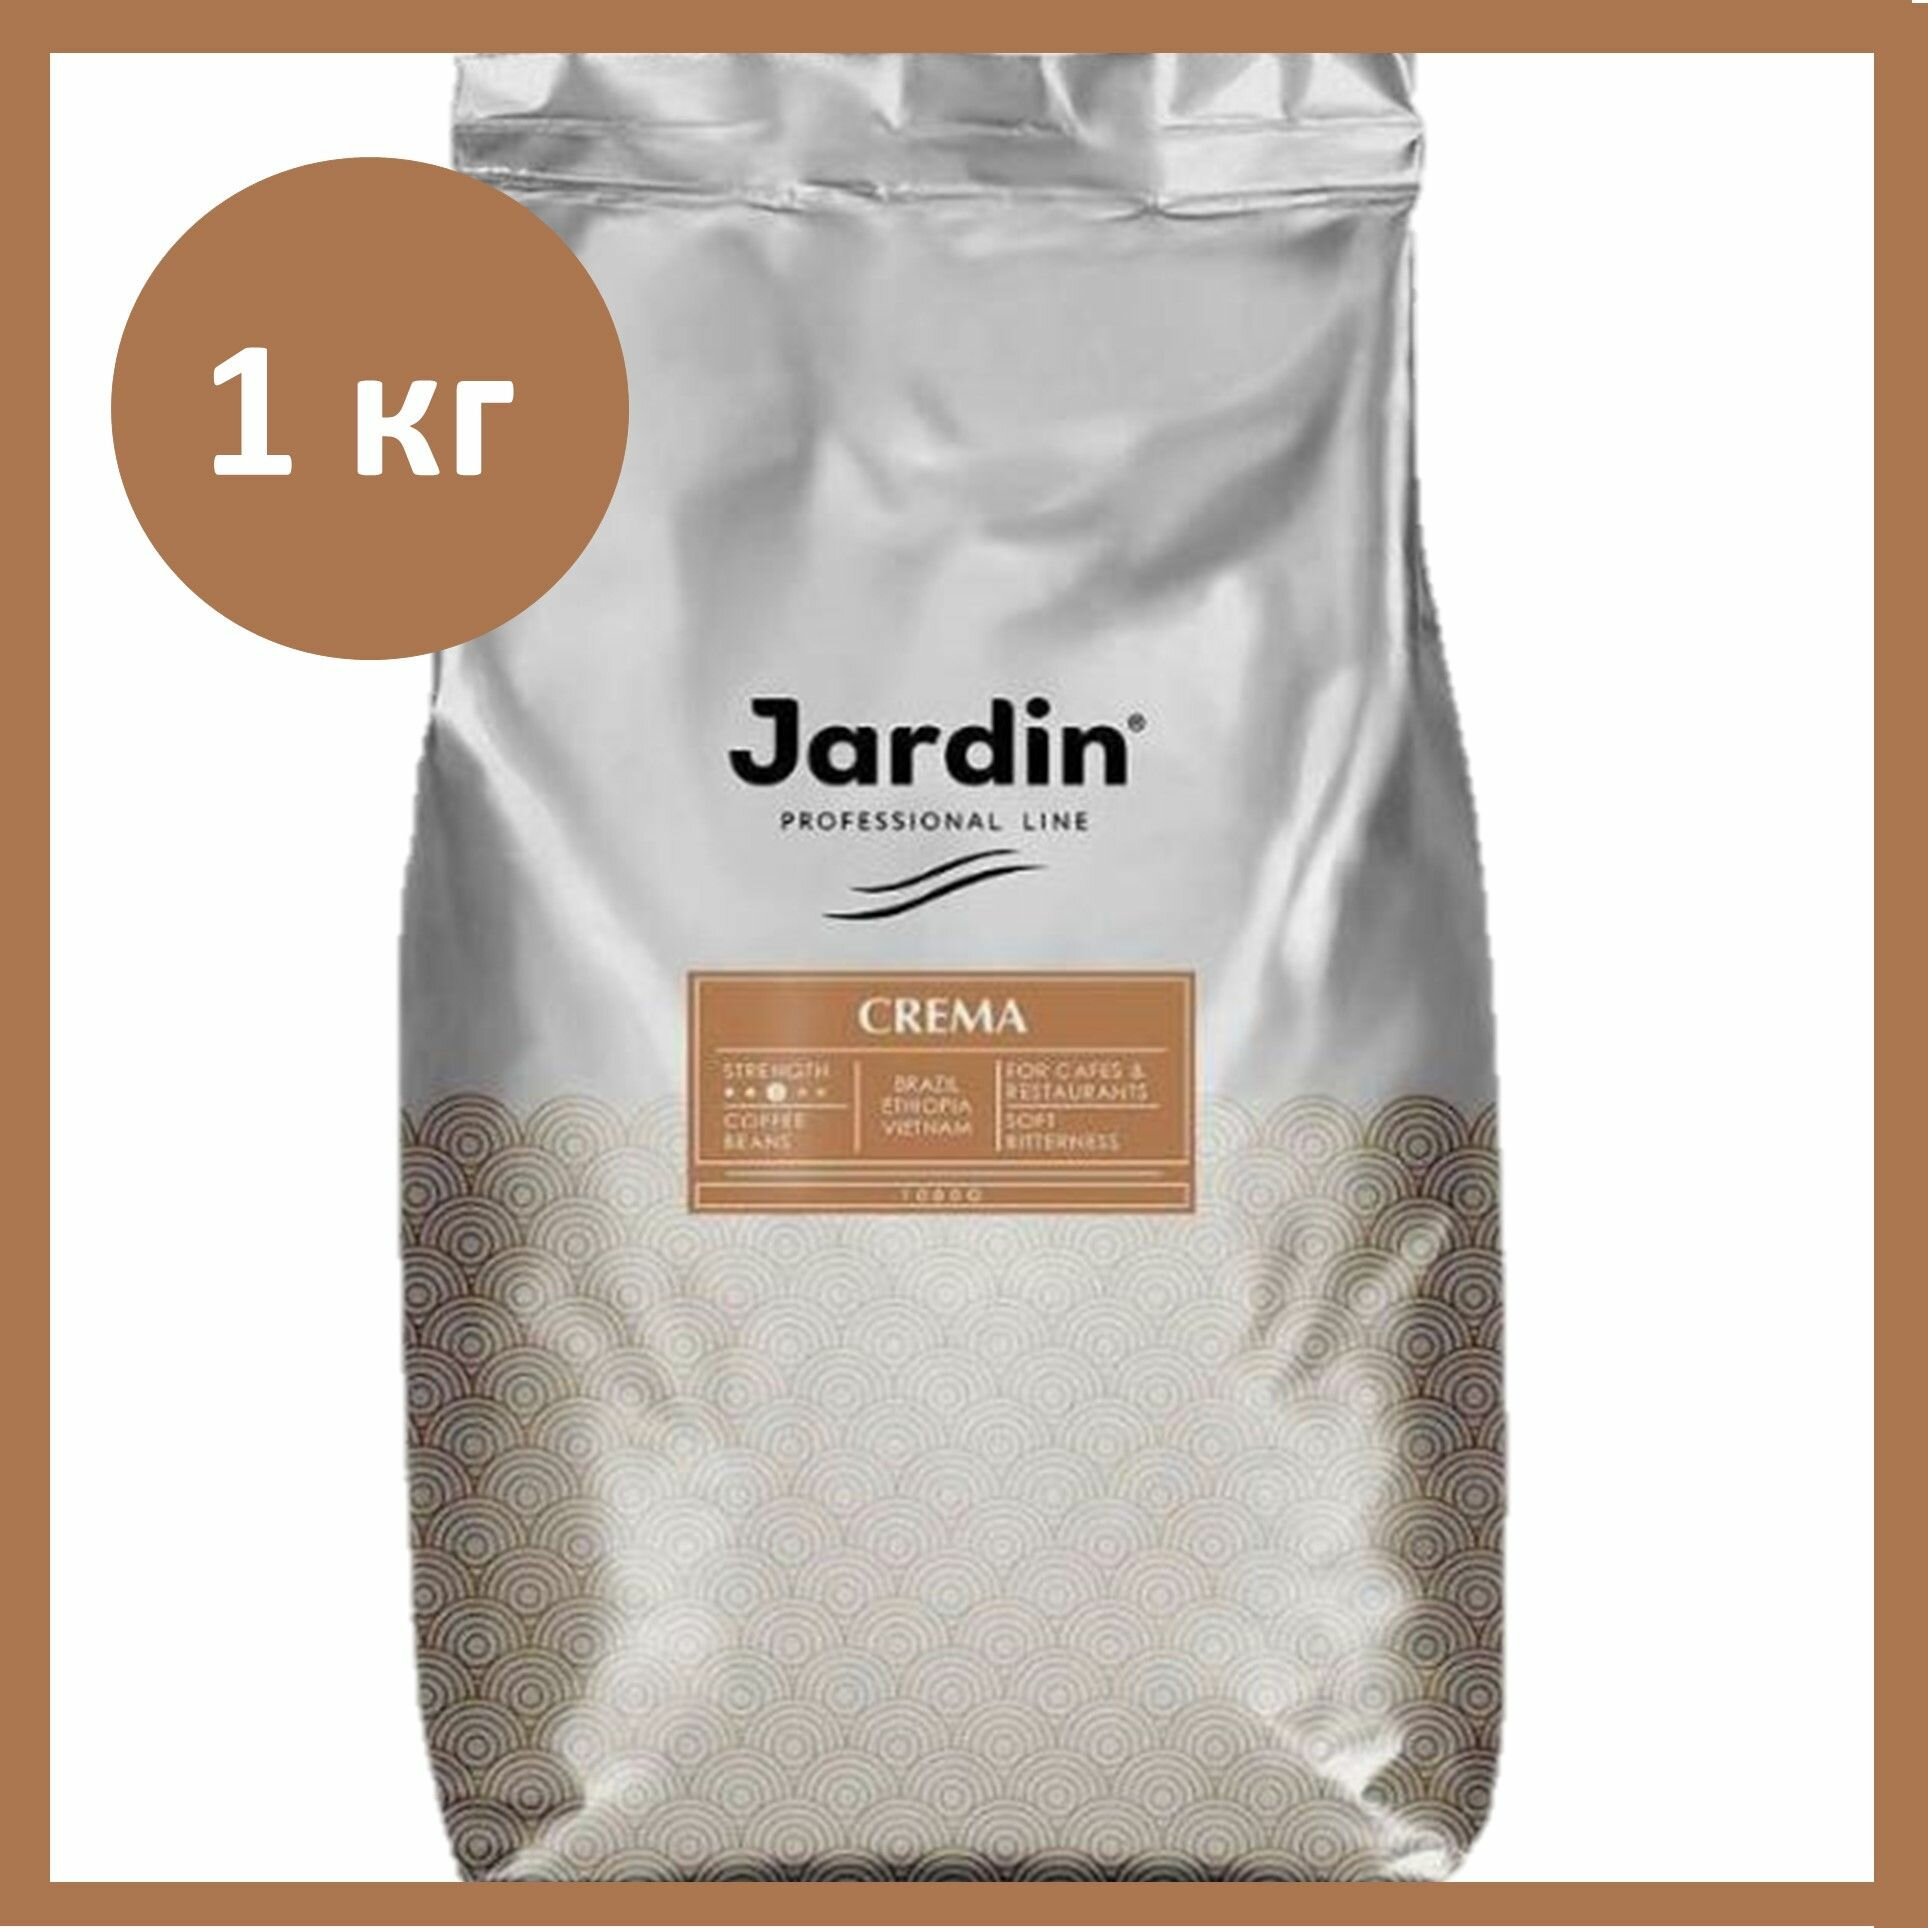 Кофе в зернах 1 кг Jardin Crema Professional Line (Жардин Крема)/Россия